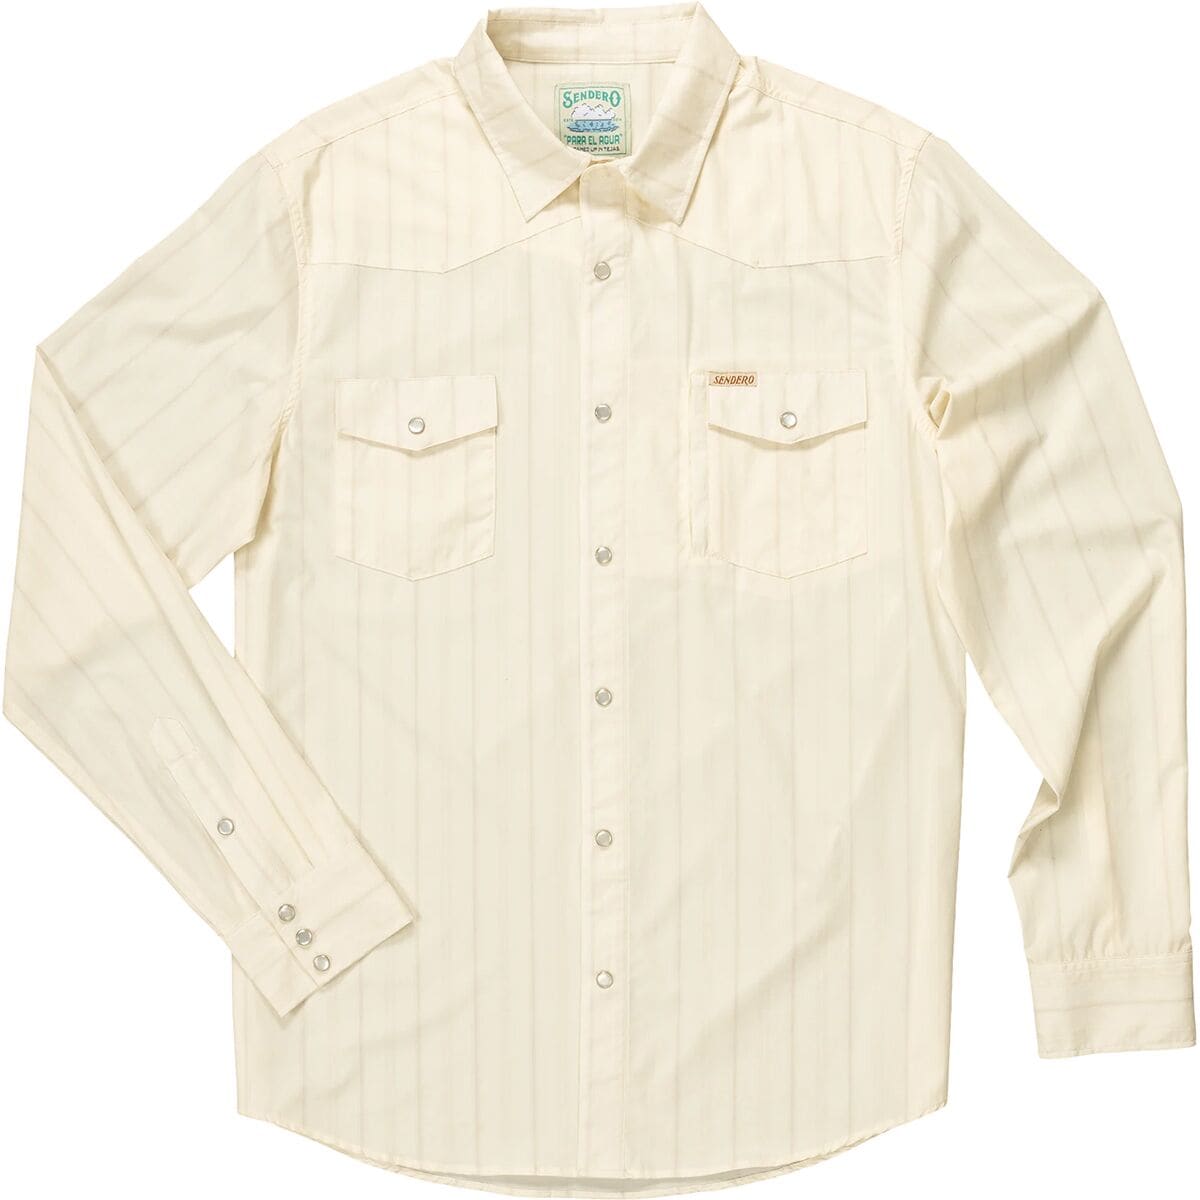 Рубашка confluence tech Sendero Provisions Co., цвет vintage white/khaki цена и фото